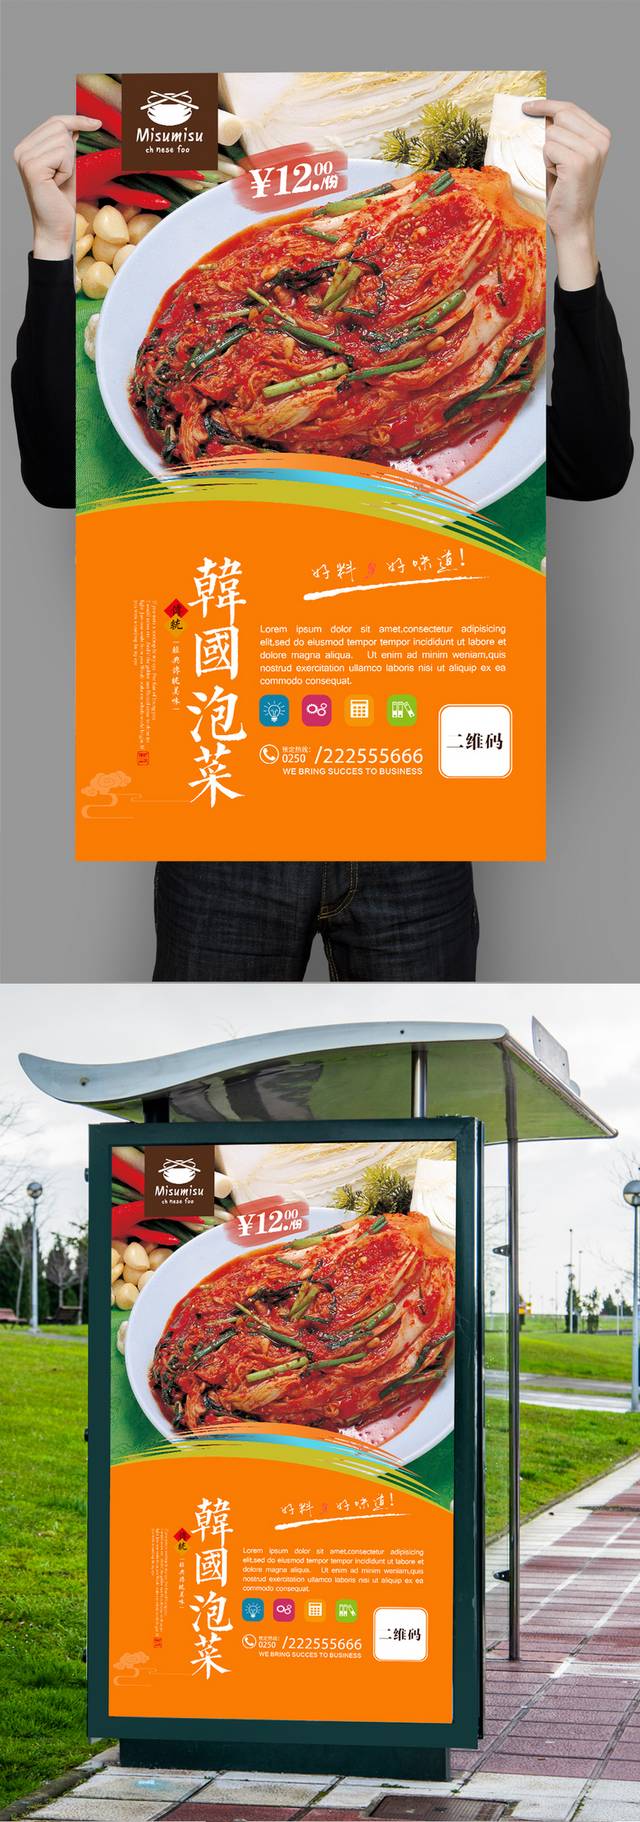 原创韩式泡菜美食促销海报